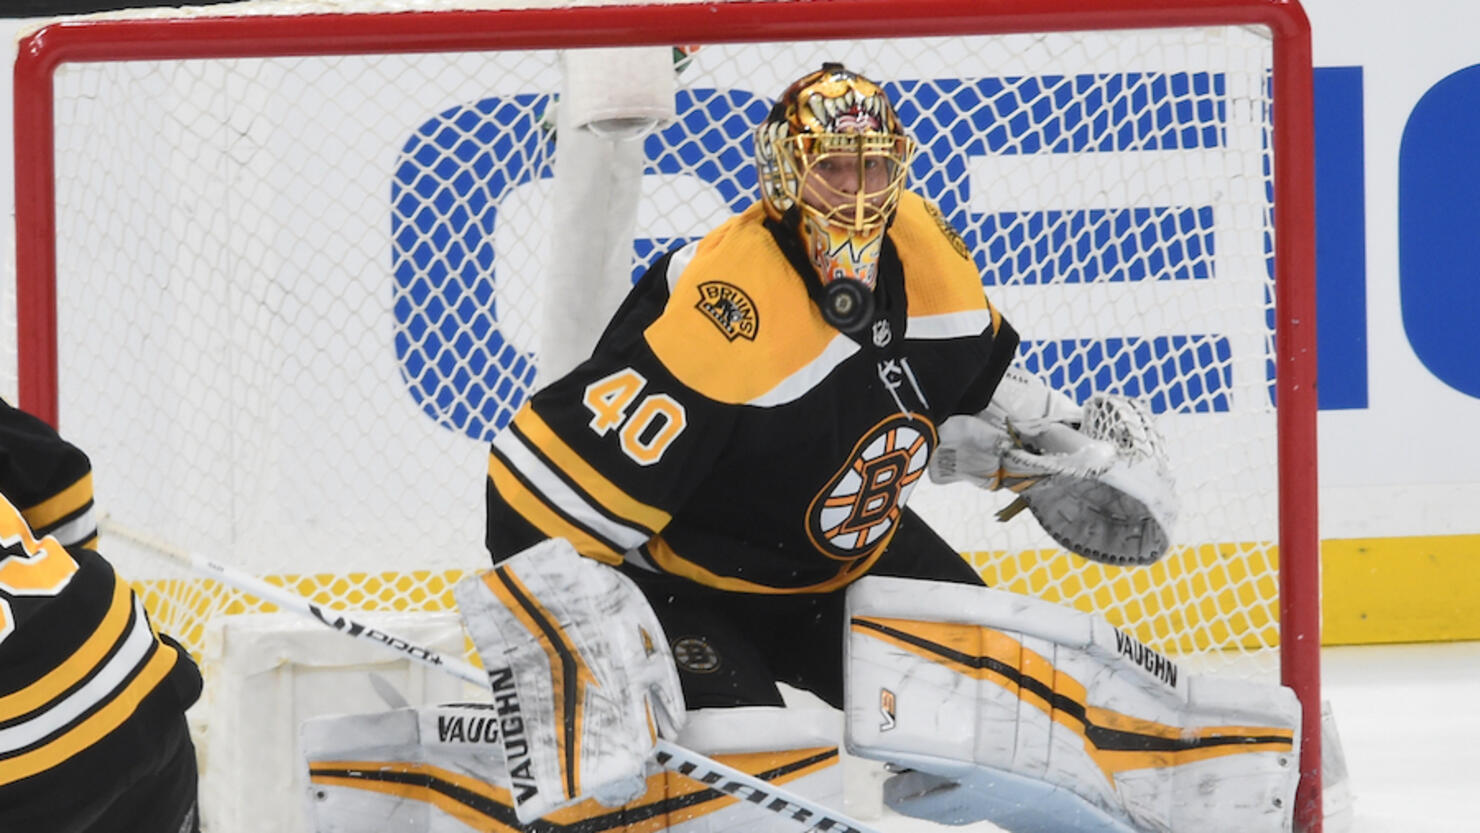 Bruins goaltender Tuukka Rask opts out of NHL season - The Boston Globe